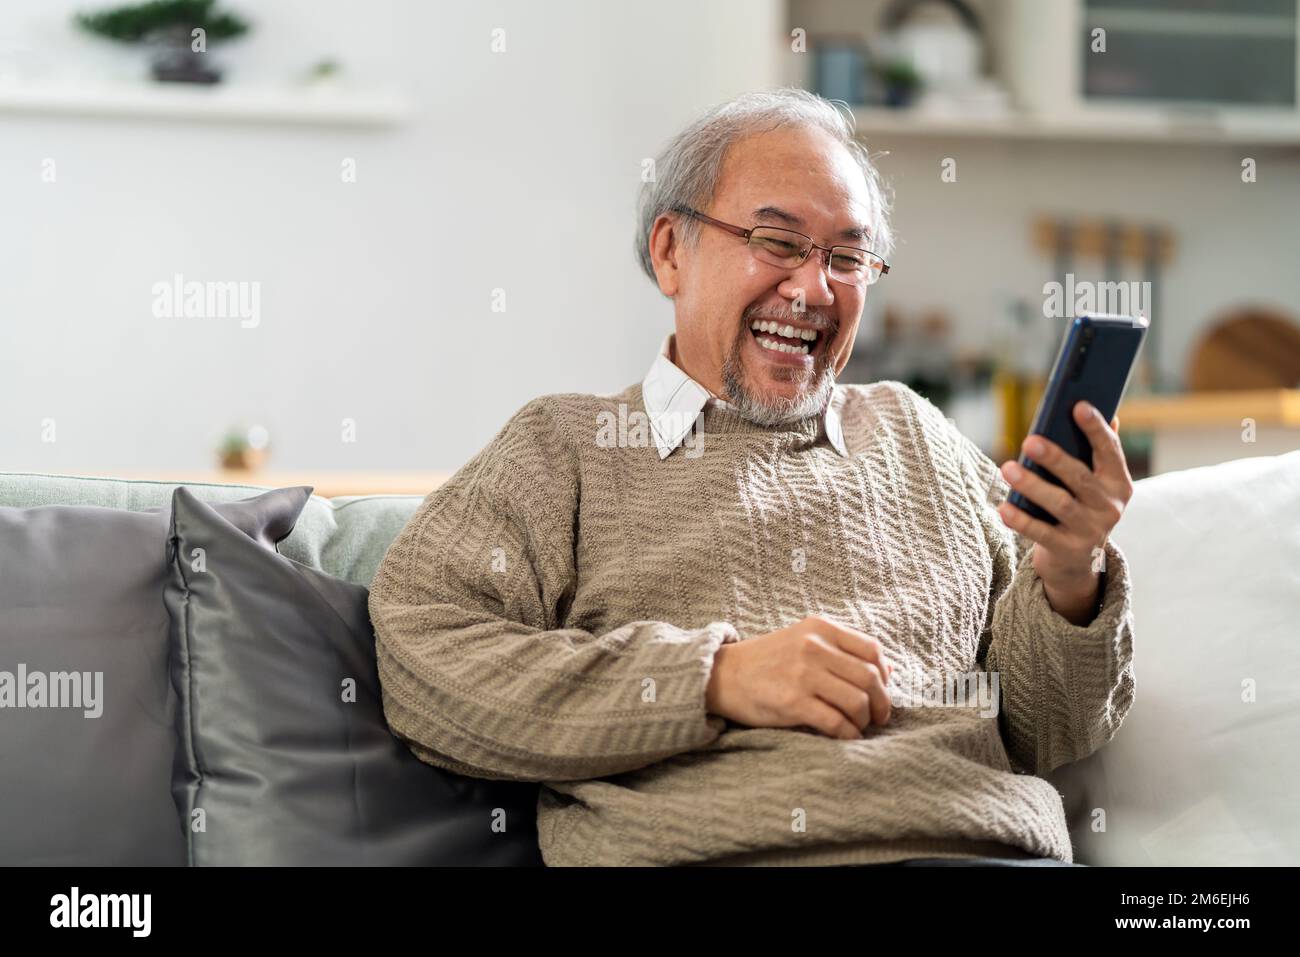 Un homme âgé utilise un téléphone portable pour passer un appel vidéo à sa famille Banque D'Images